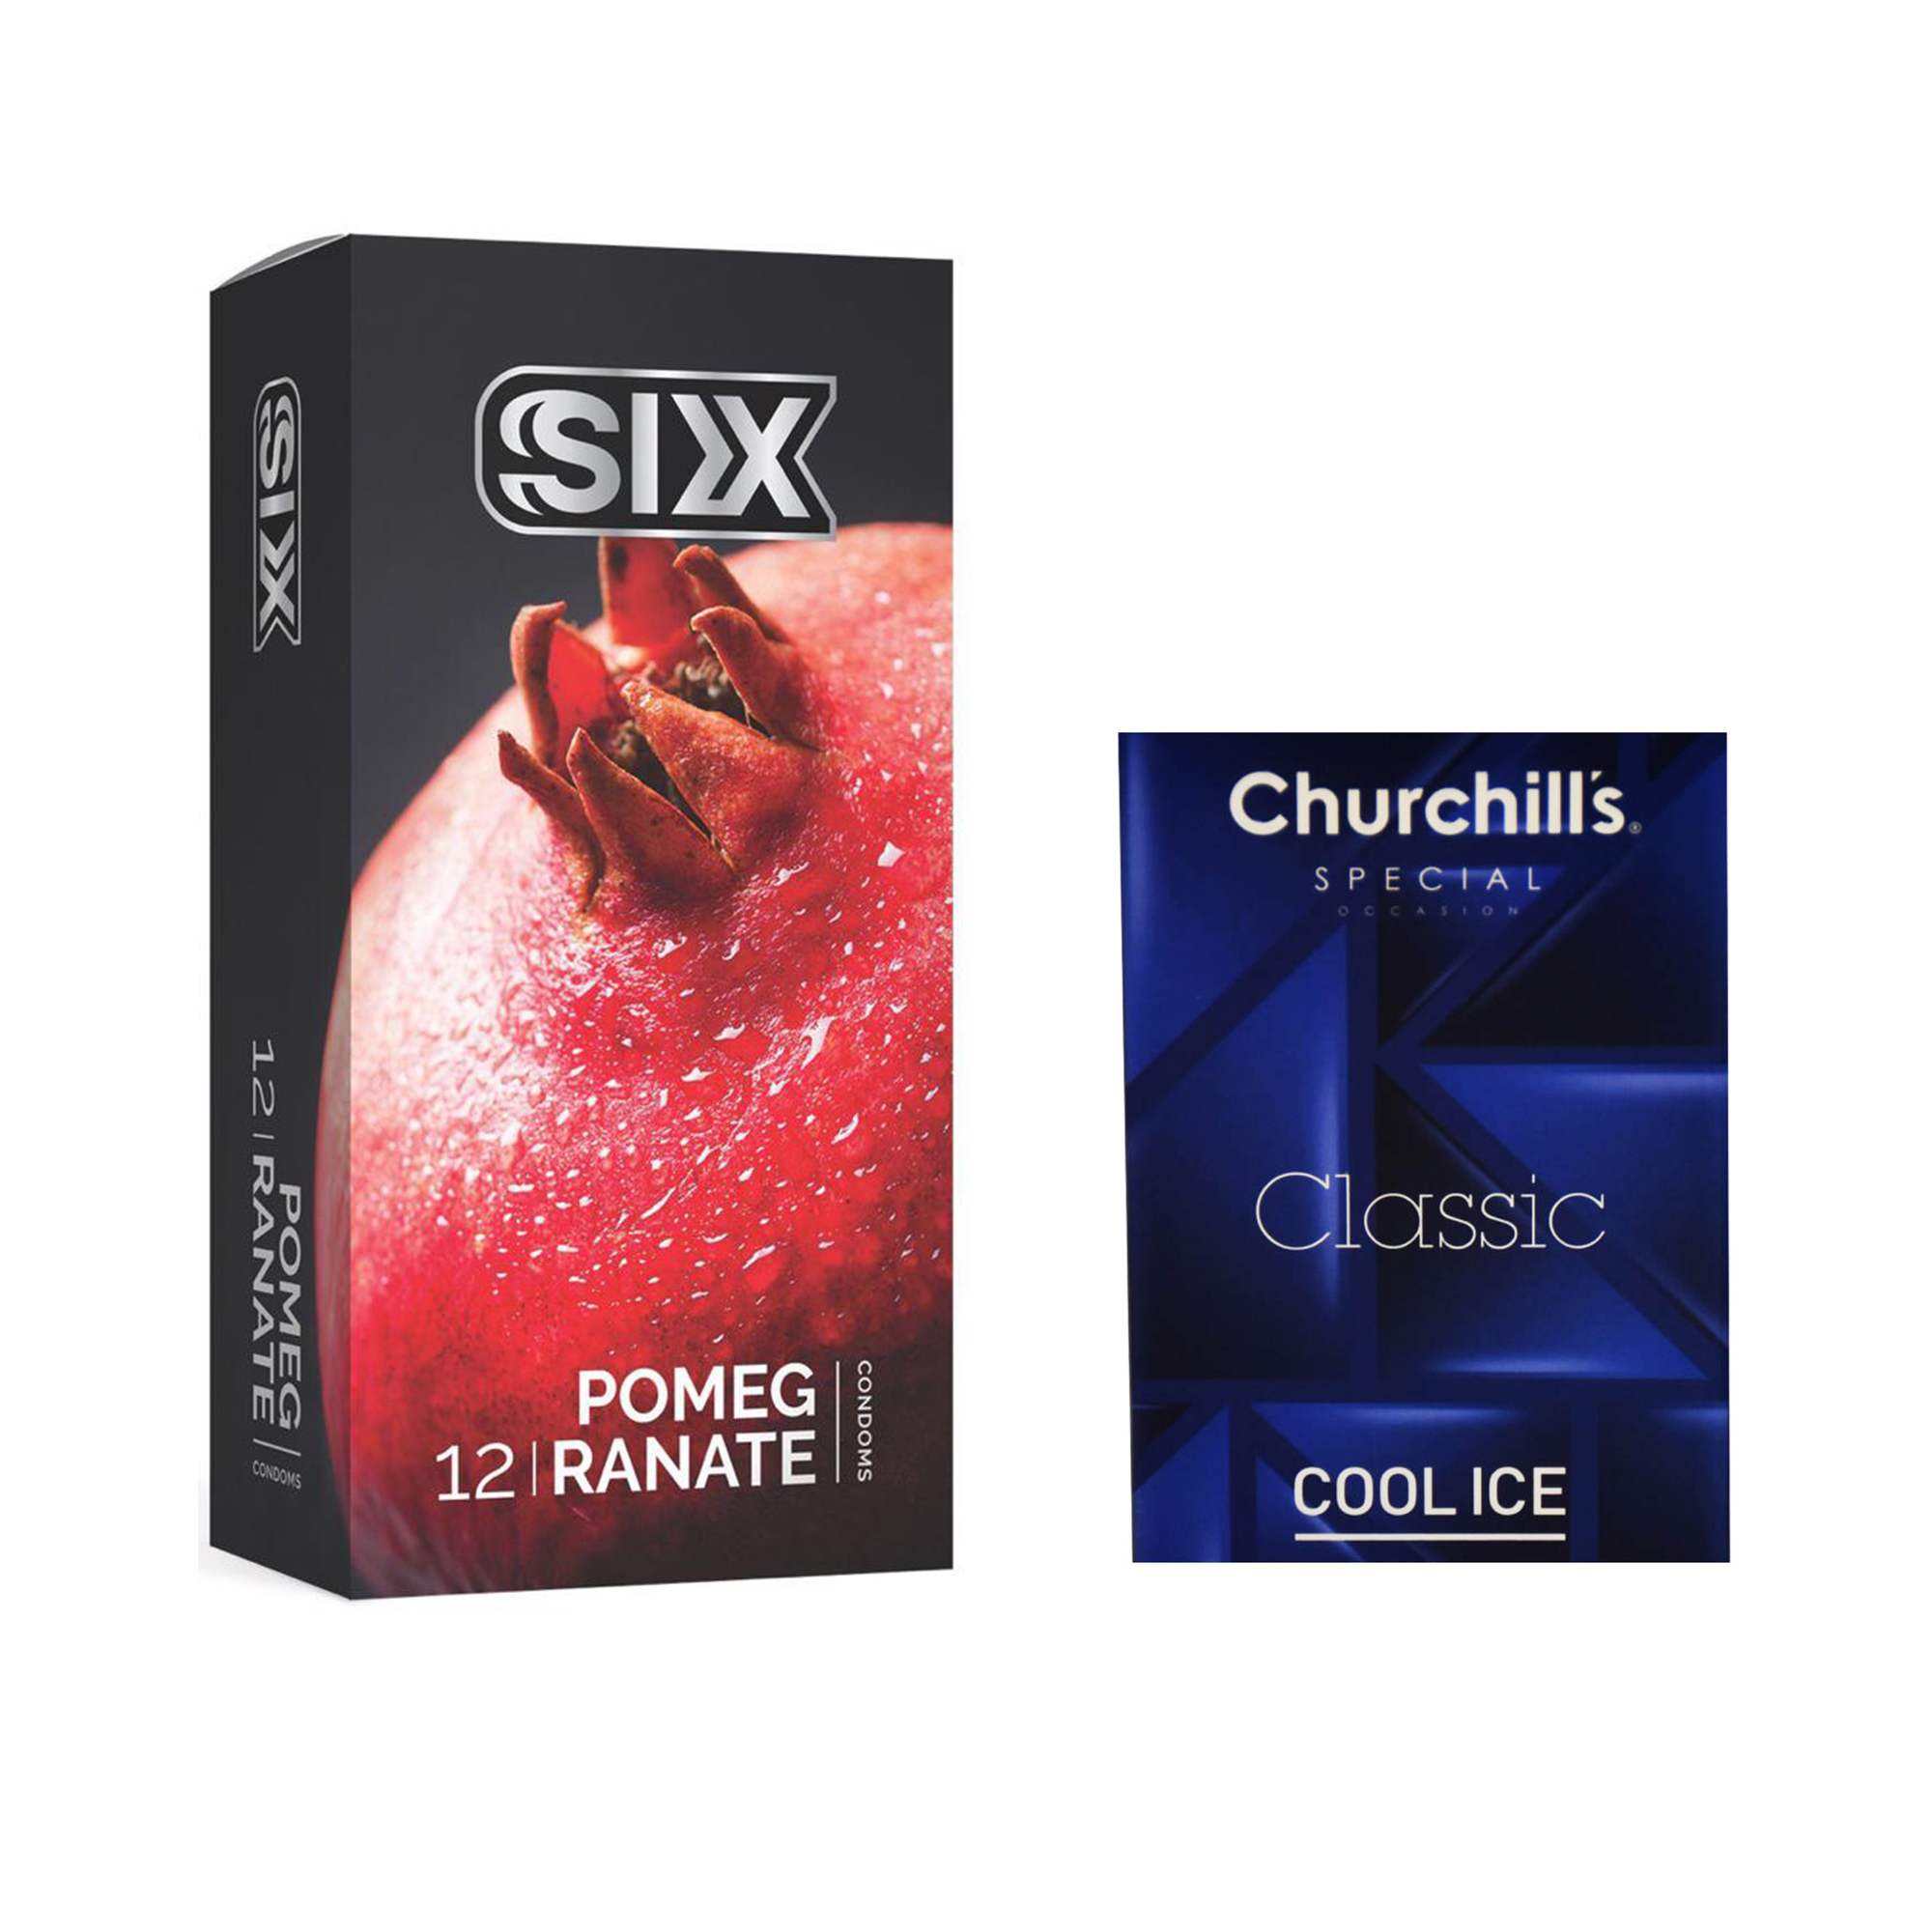 کاندوم سیکس مدل Pomegranate بسته 12 عددی به همراه کاندوم چرچیلز مدل Cool Ice بسته 3 عددی